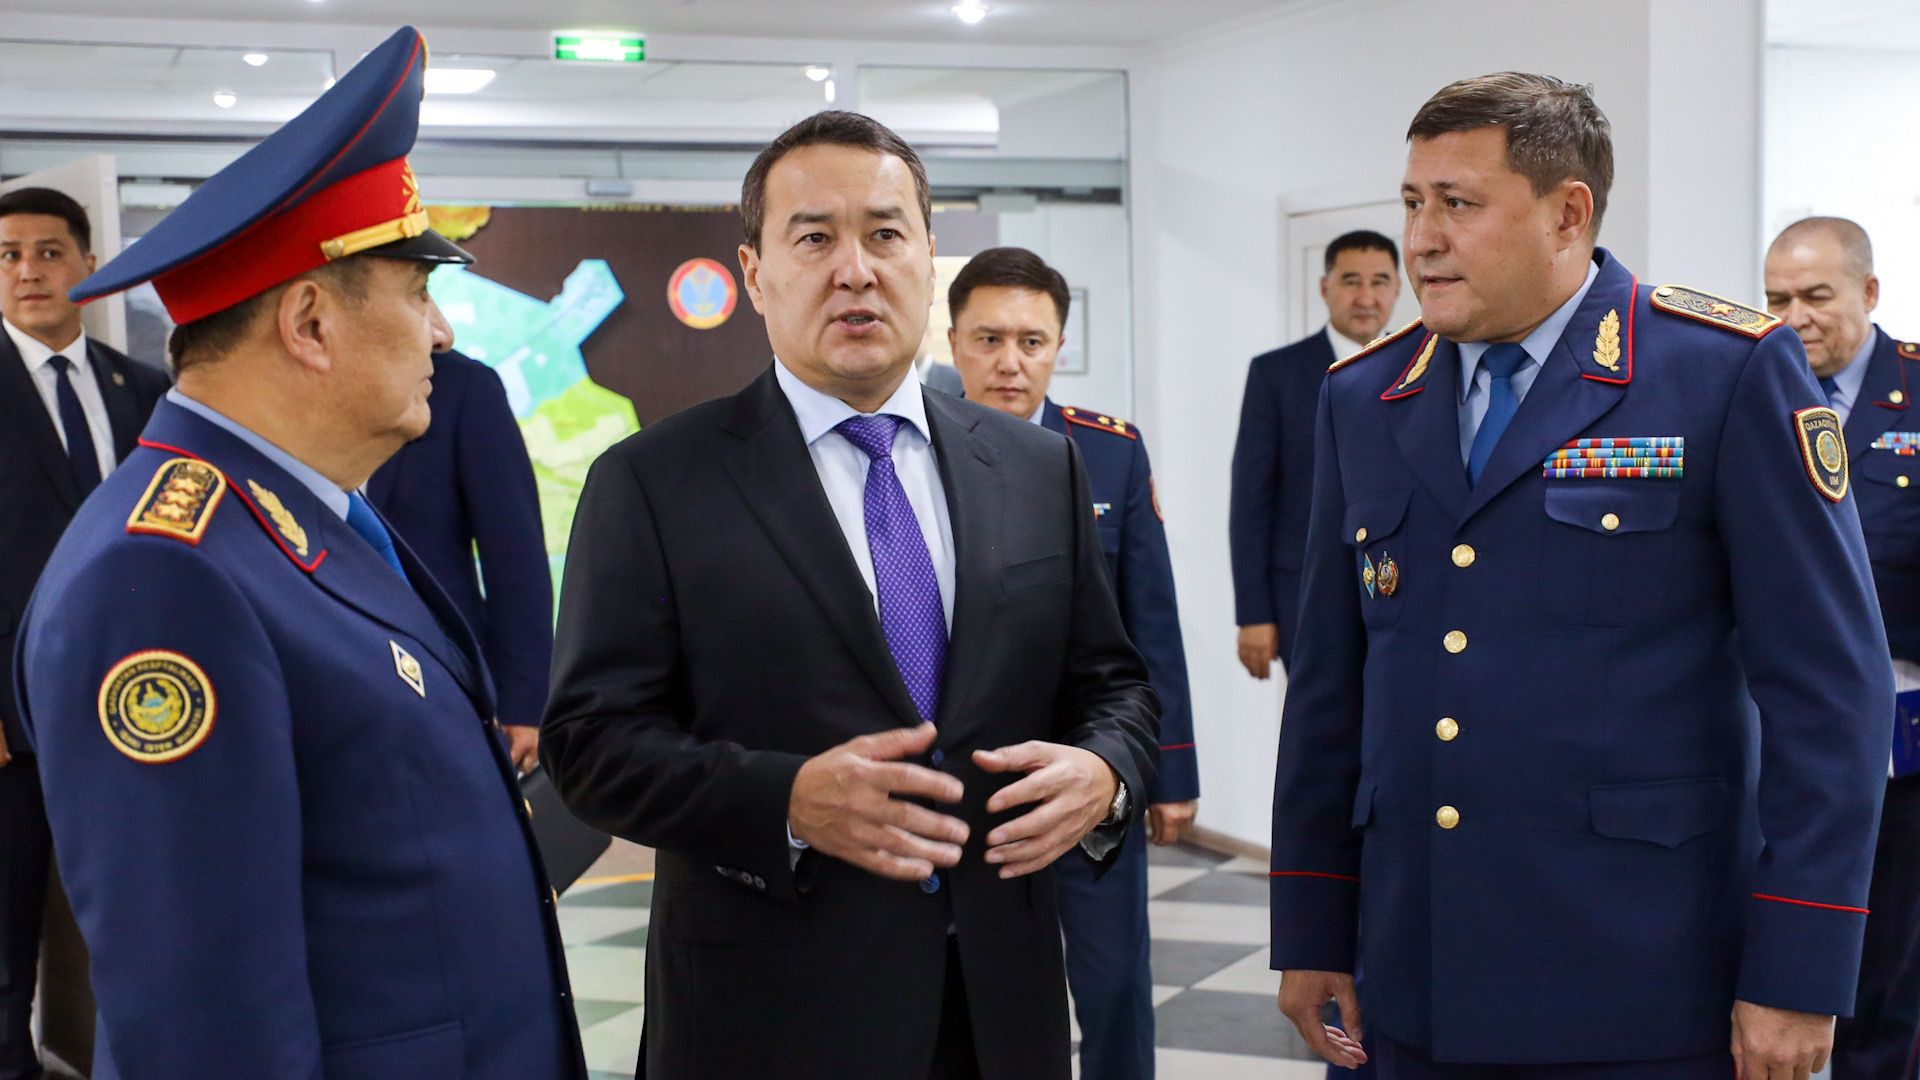 С помощью камер видеонаблюдения в Казахстане раскрыто шесть тысяч преступлений 2364719 — Kapital.kz 